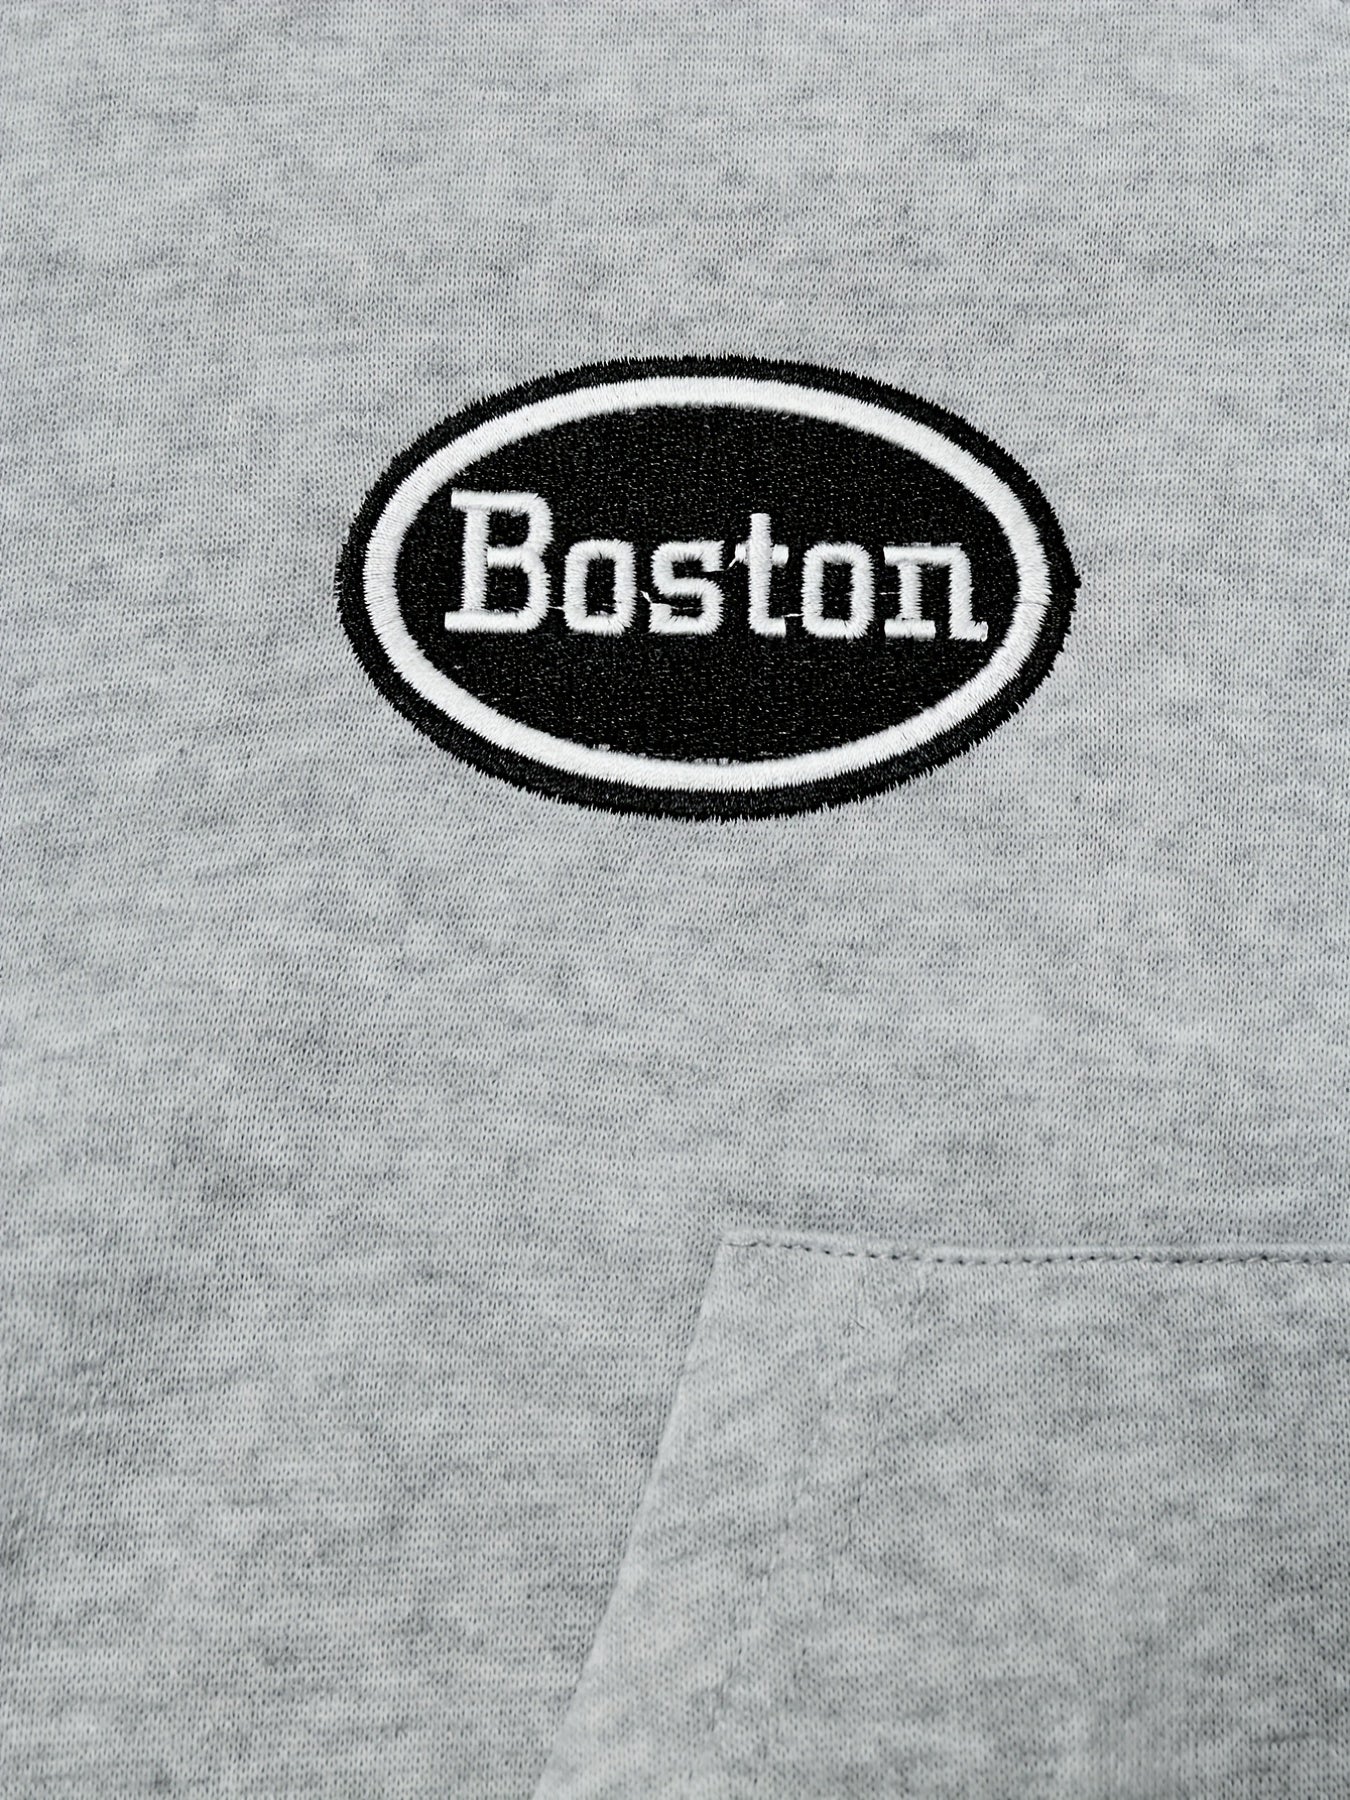 Antmvs Boston Zip Up Crop Hoodie, Casual Long Sleeve Drawstring Hoodies Sweatshirt, Women's Clothing